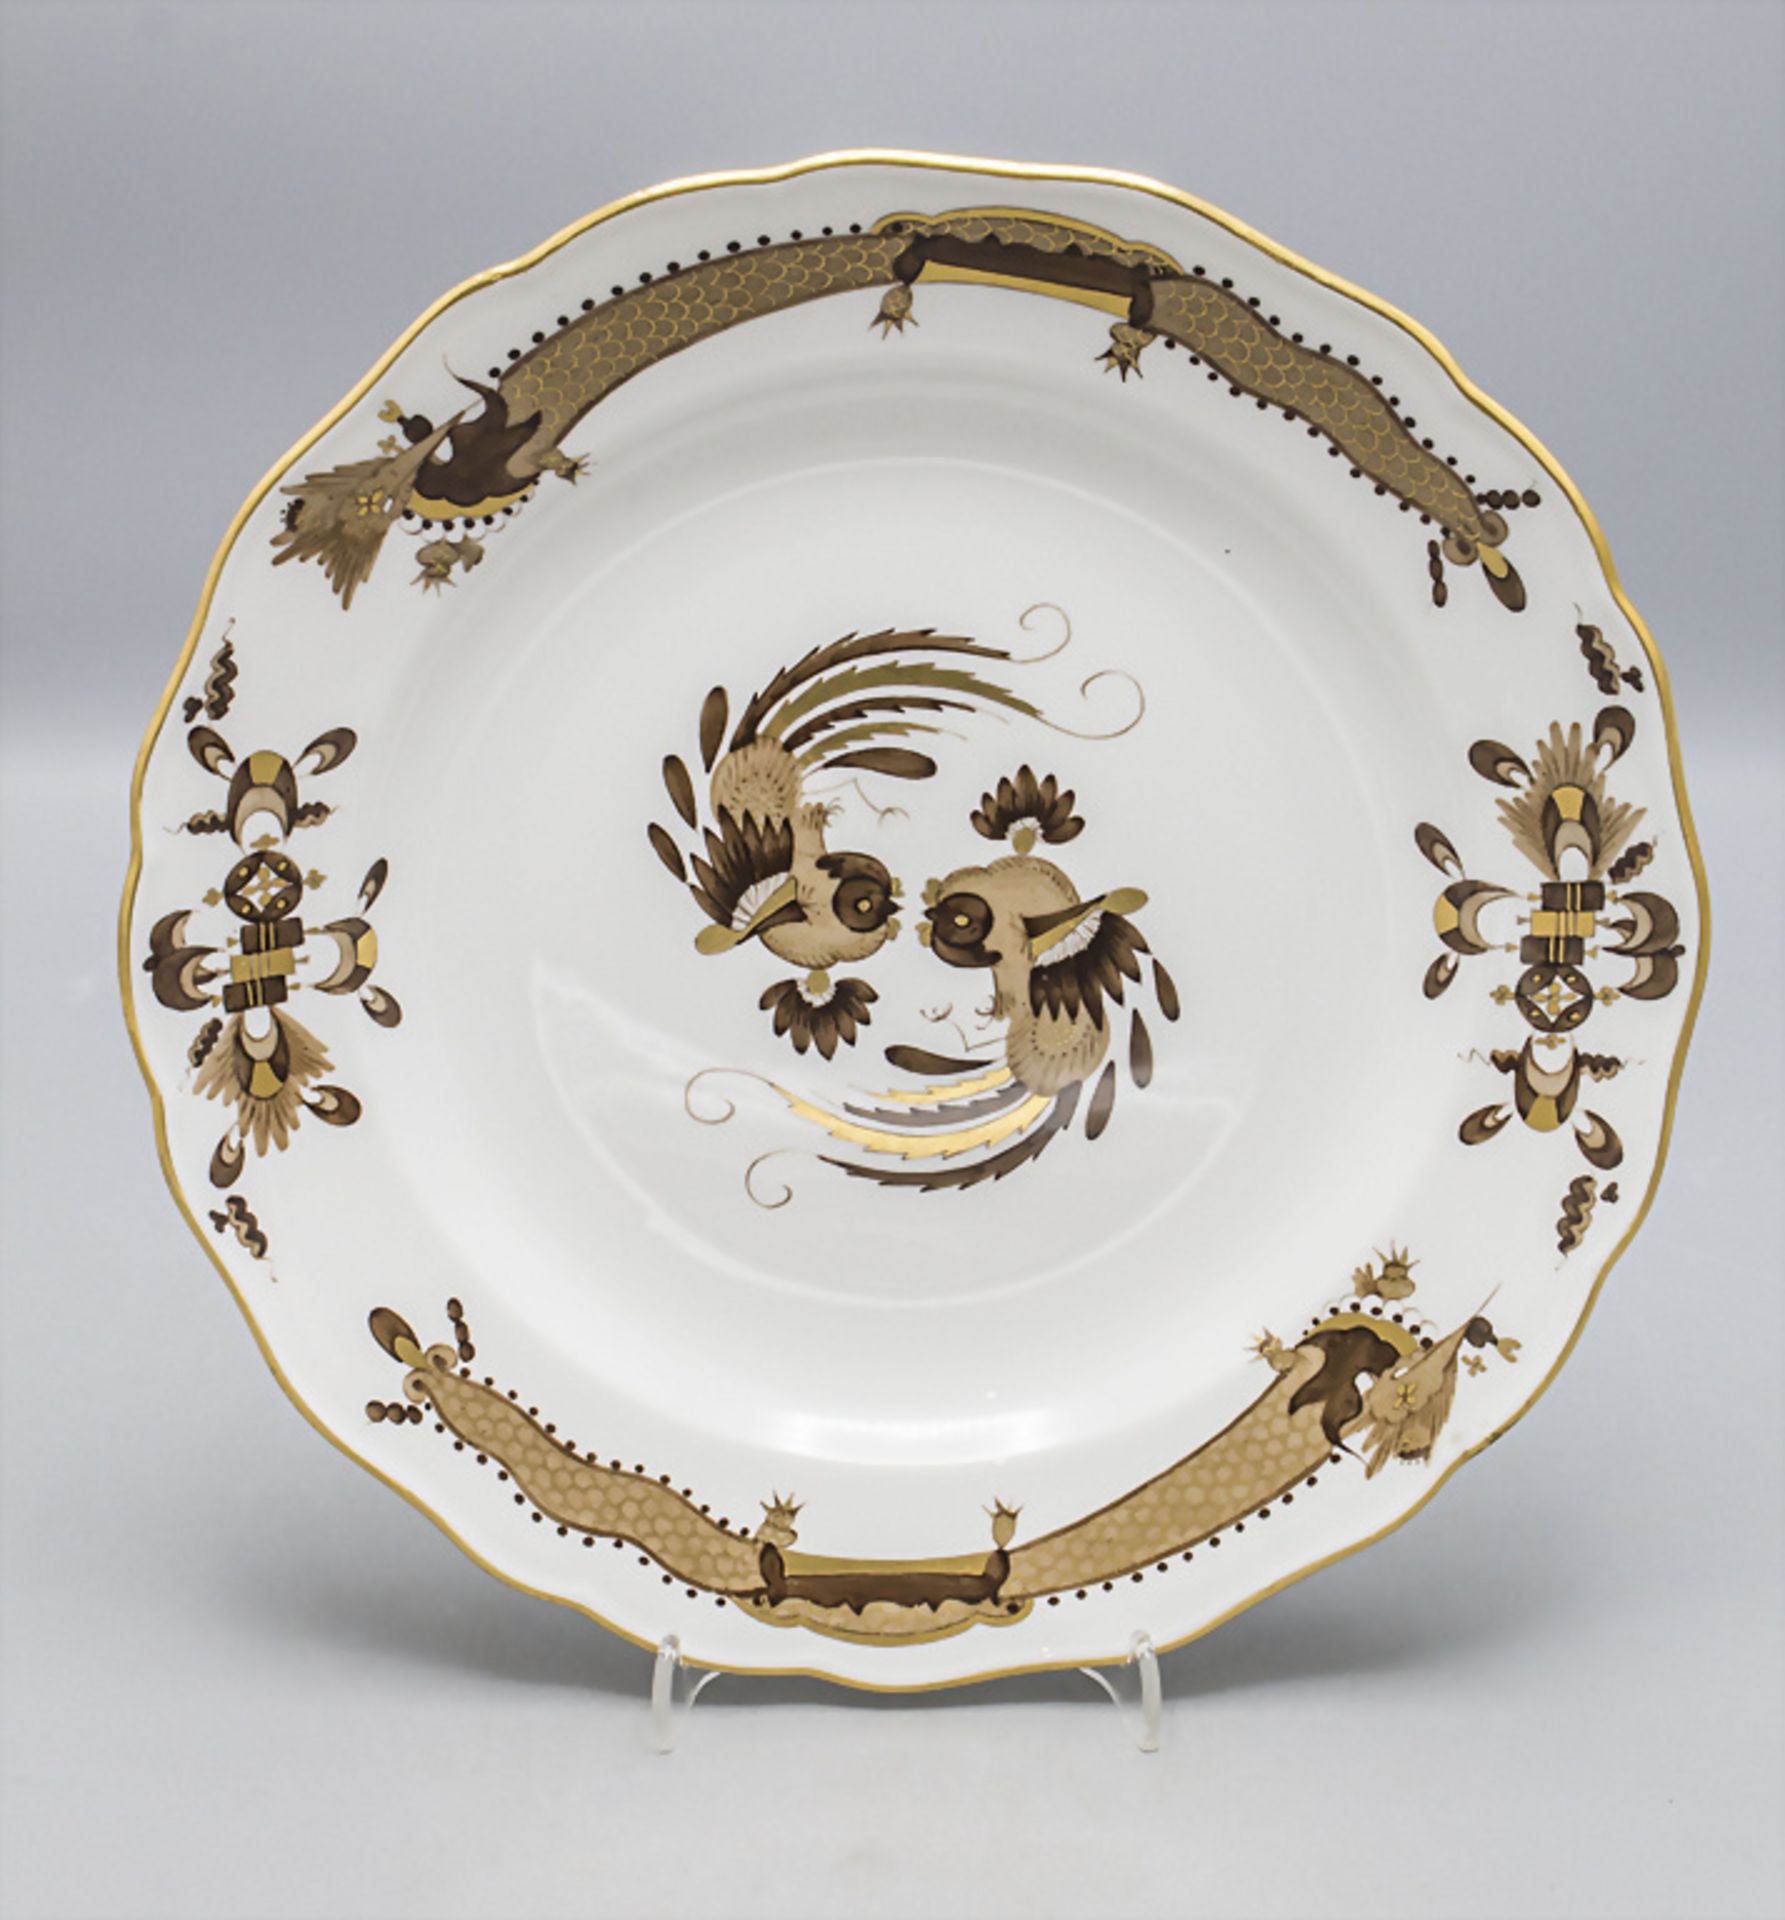 Speiseteller 'Reicher Drache' / A dinner plate with 'Rich Dragon' decoration, Meissen, Ende 19. Jh.